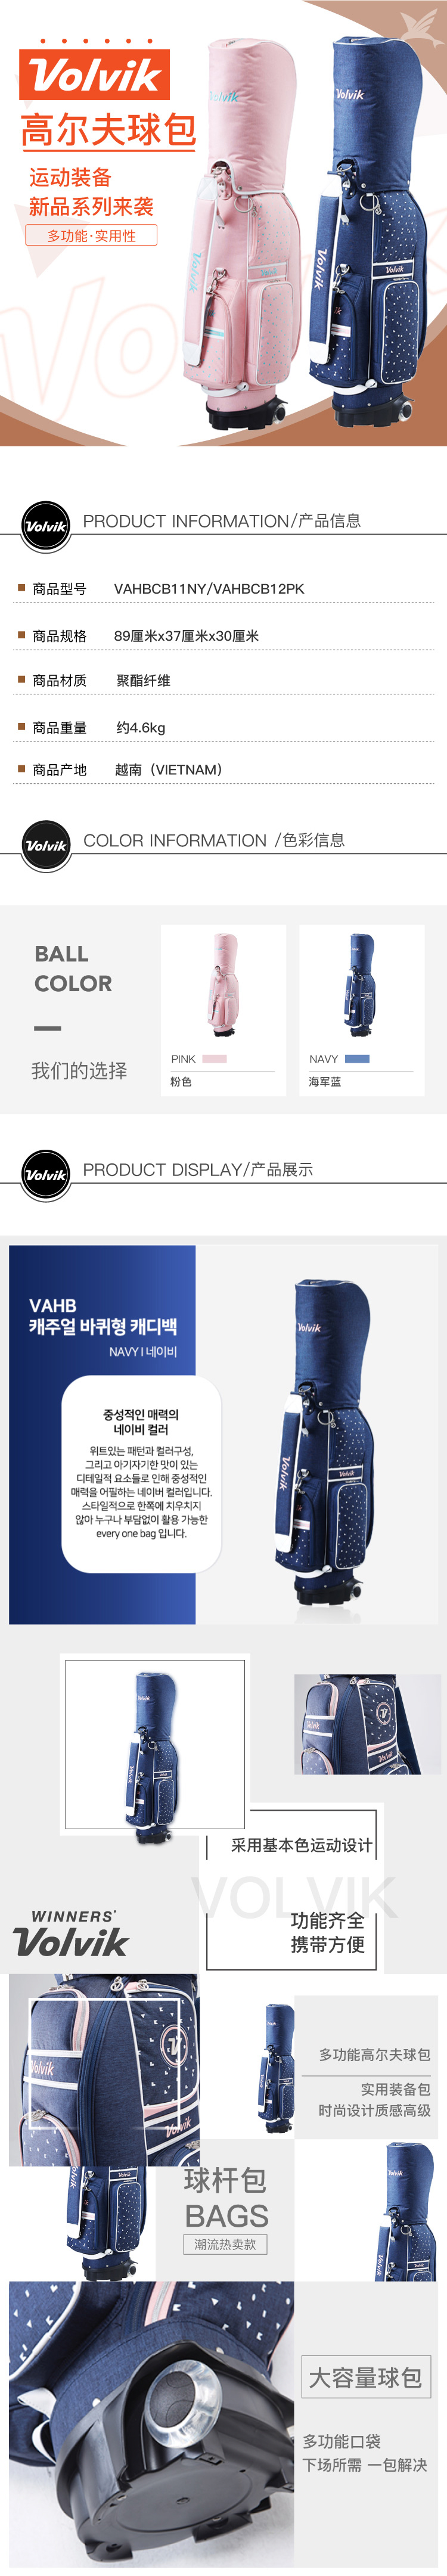 VOLVIK韩国正品高尔夫球包 新款多功能休闲易携带轮式球杆包